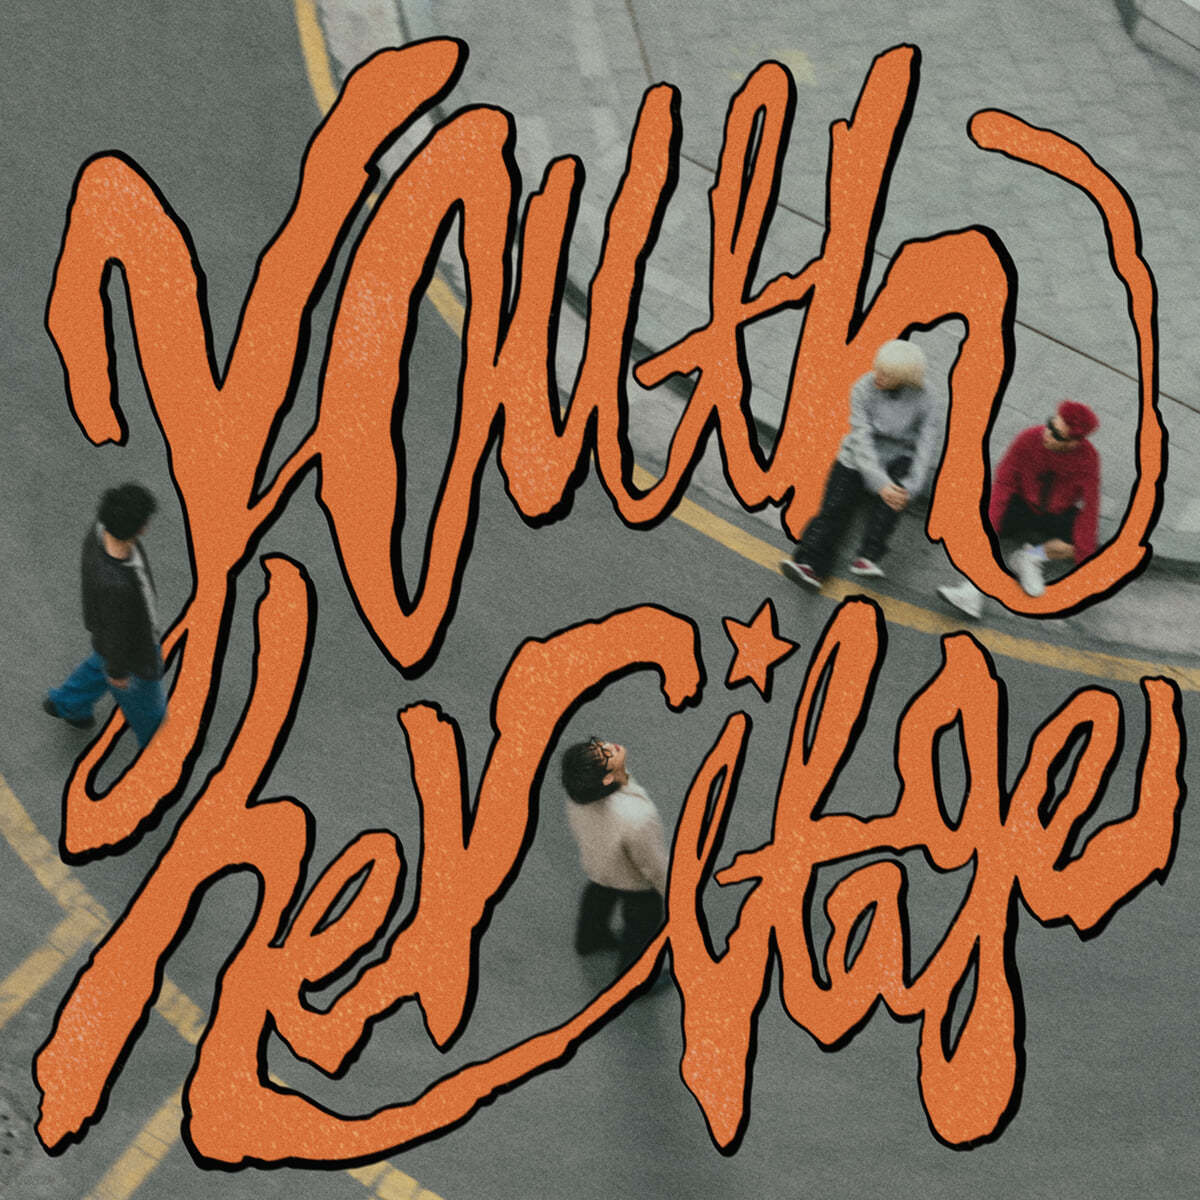 팔칠댄스 (87dance) - Youth Heritage